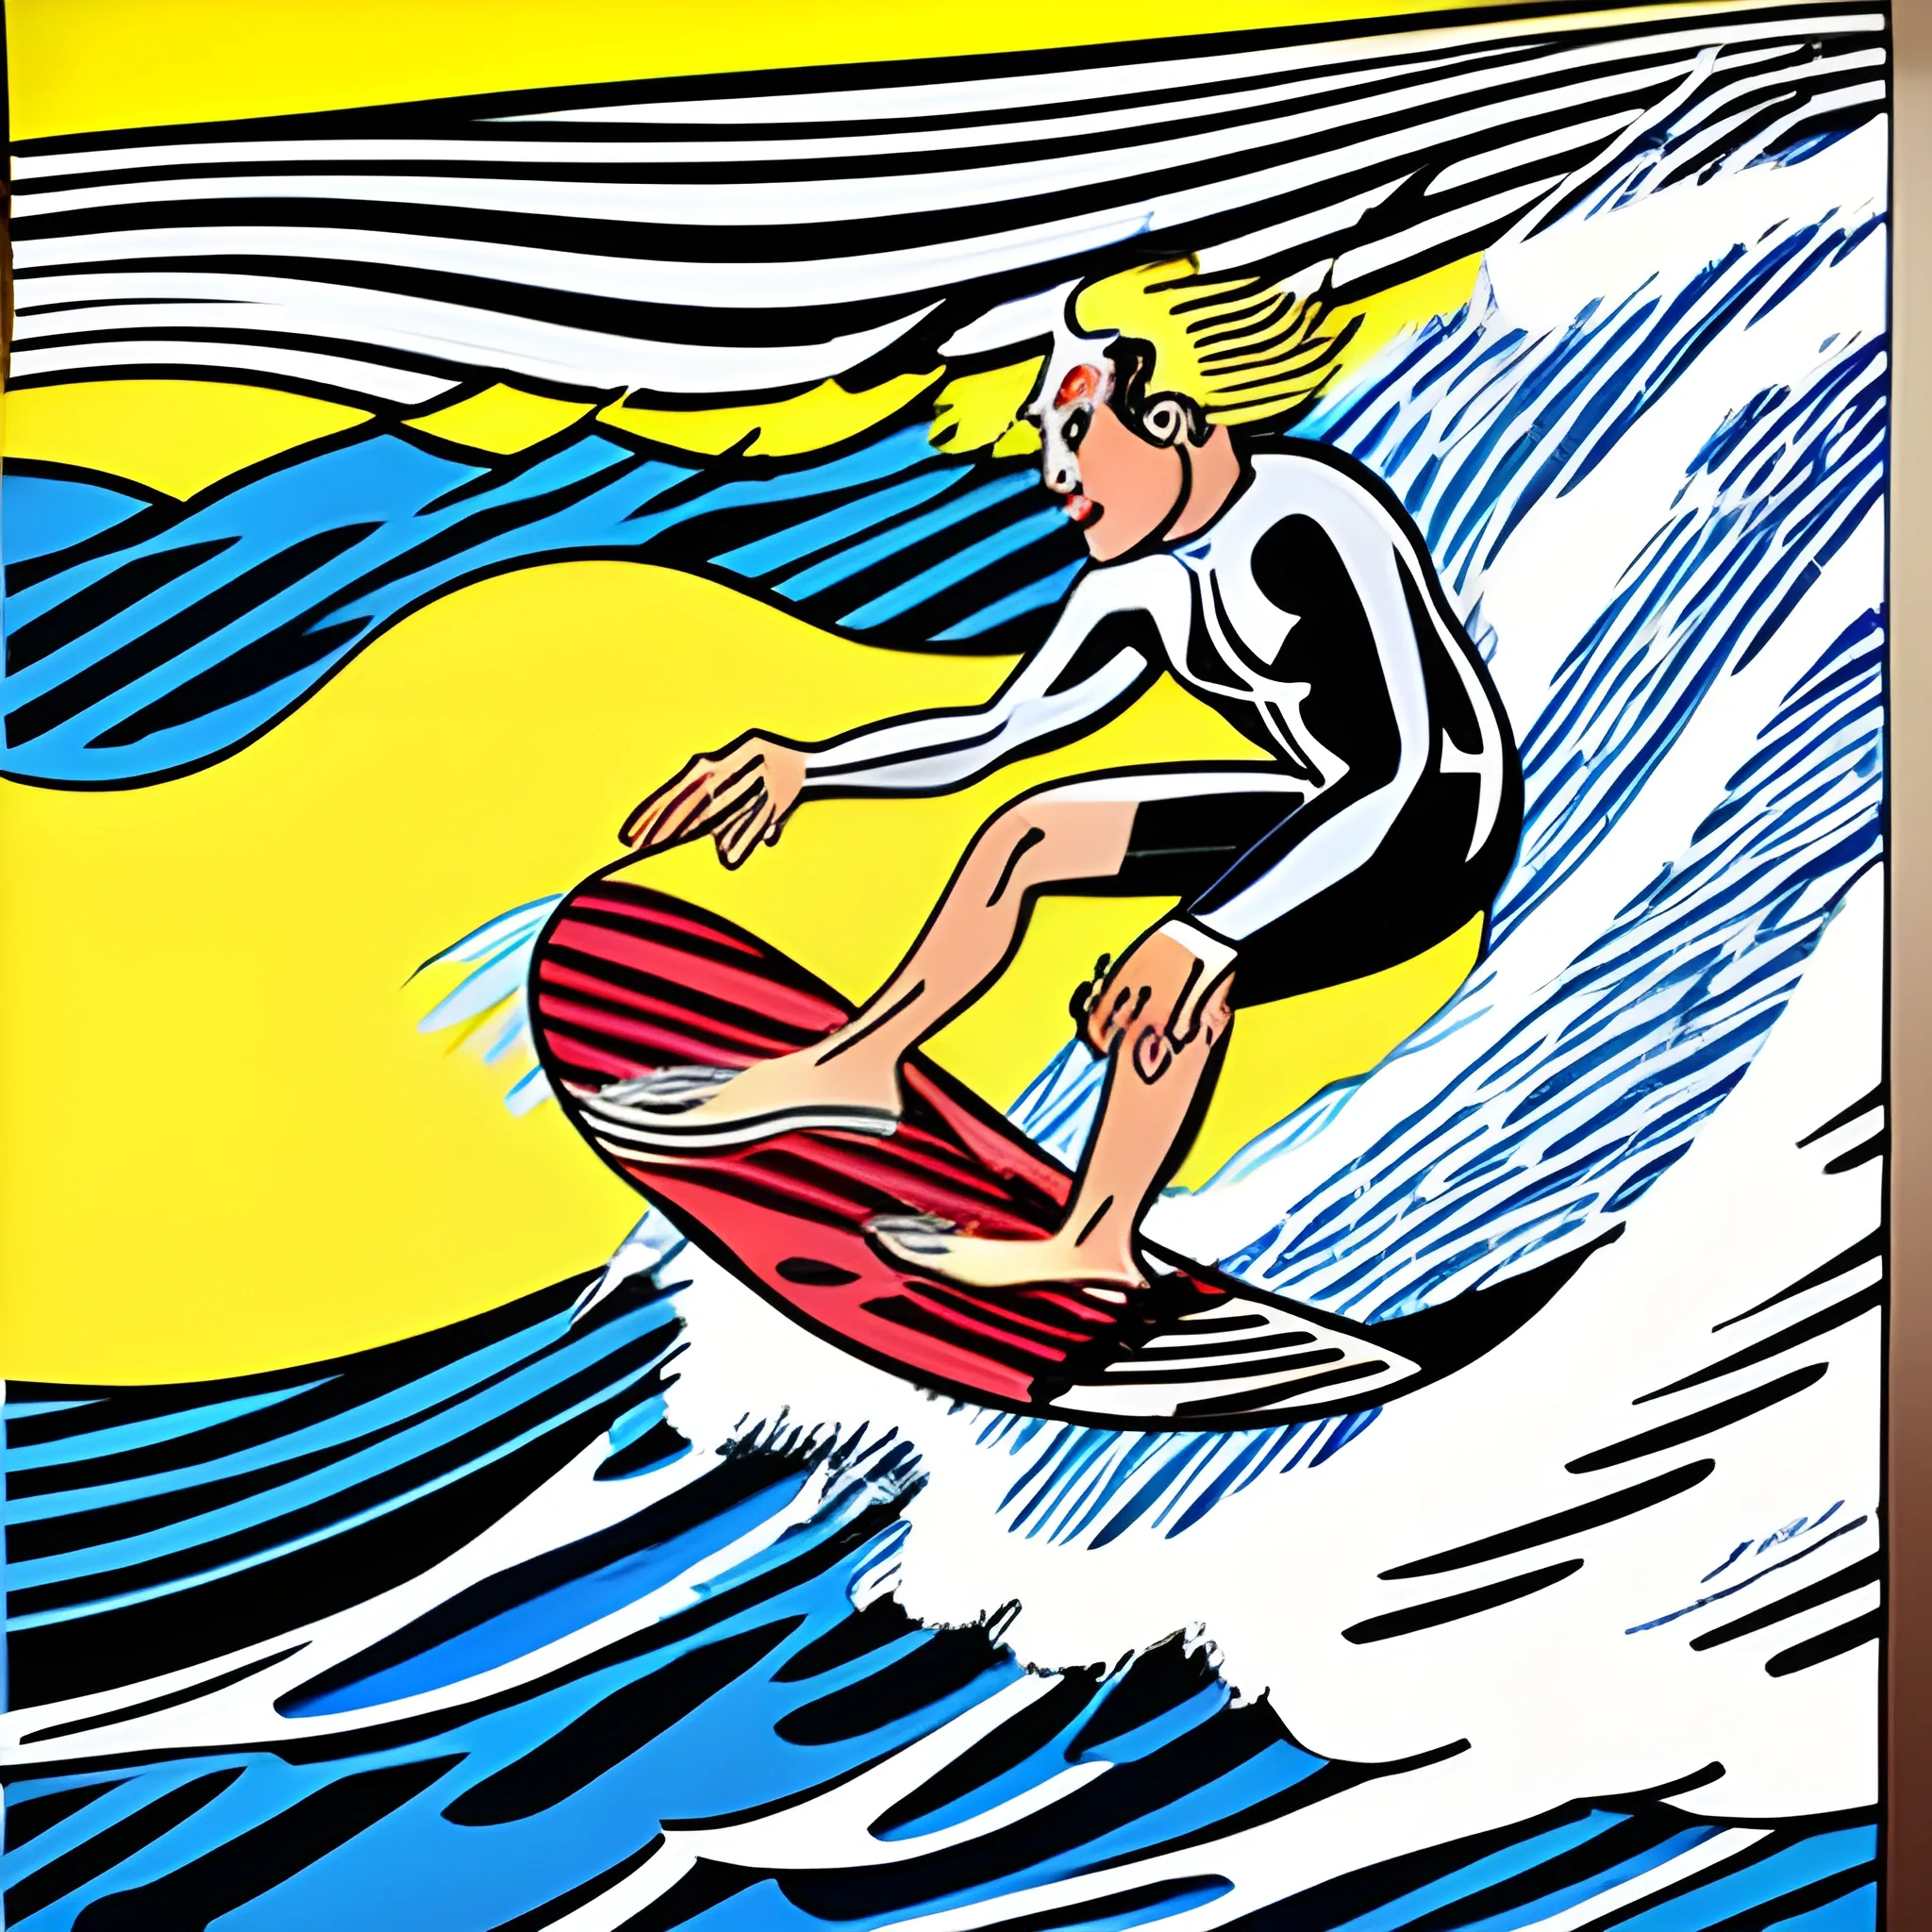 Roy Lichtenstein painting that capture the surfer